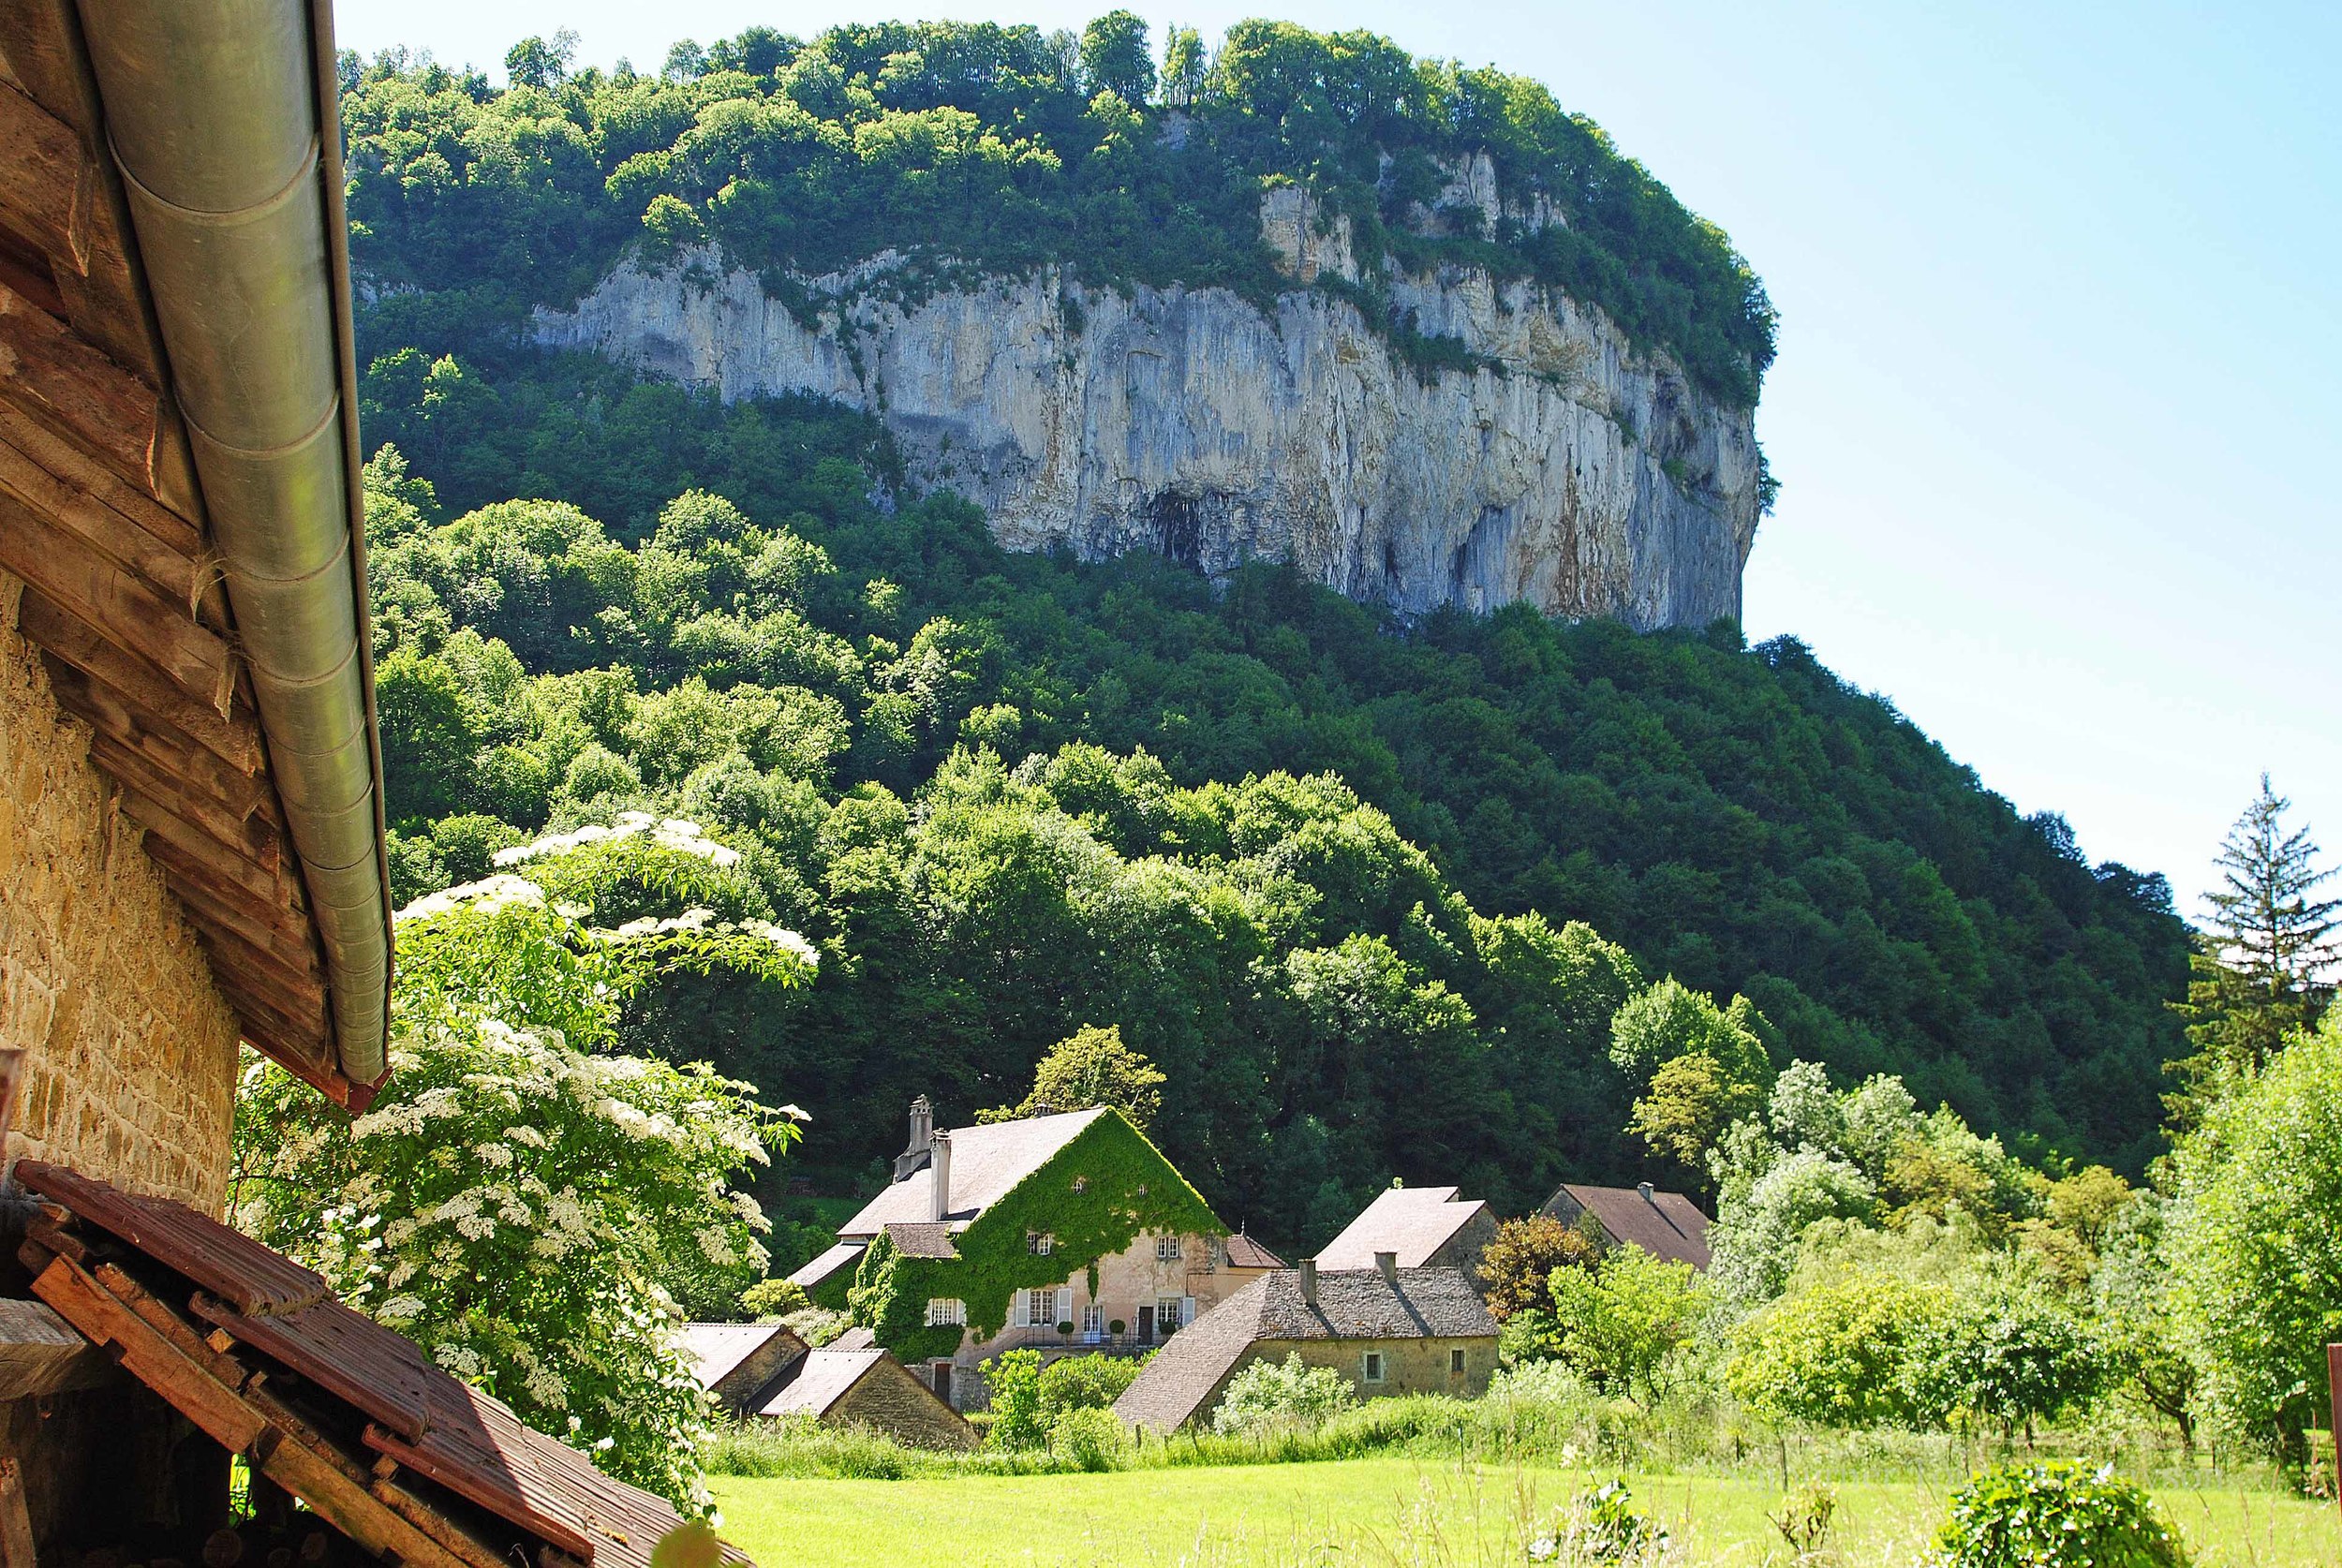 Baume-les-Messieurs, Most Beautiful Village, France